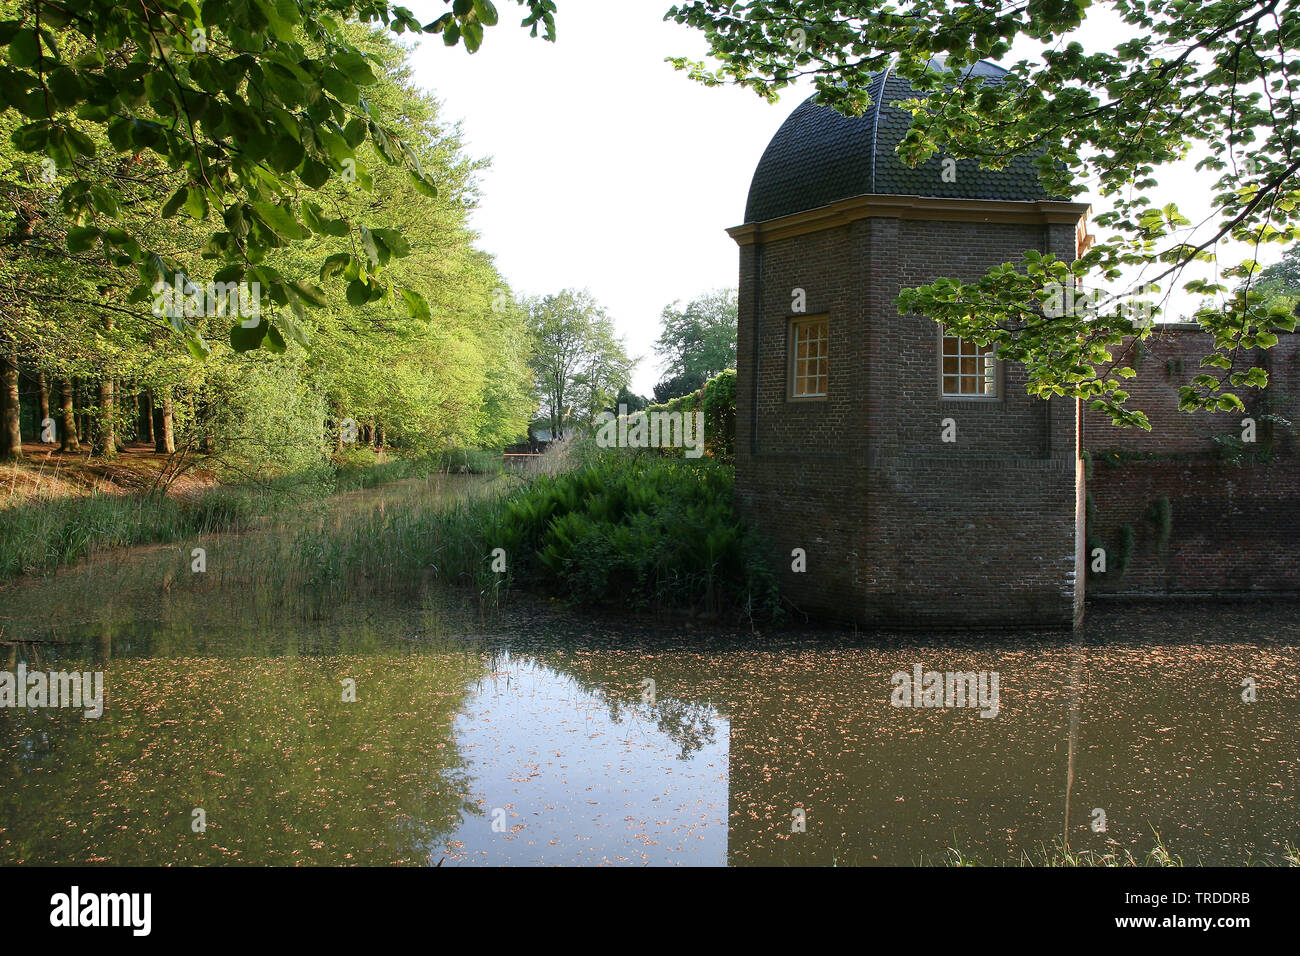 Eerde castello di Vecht en Beneden regge, Paesi Bassi Overijssel Foto Stock